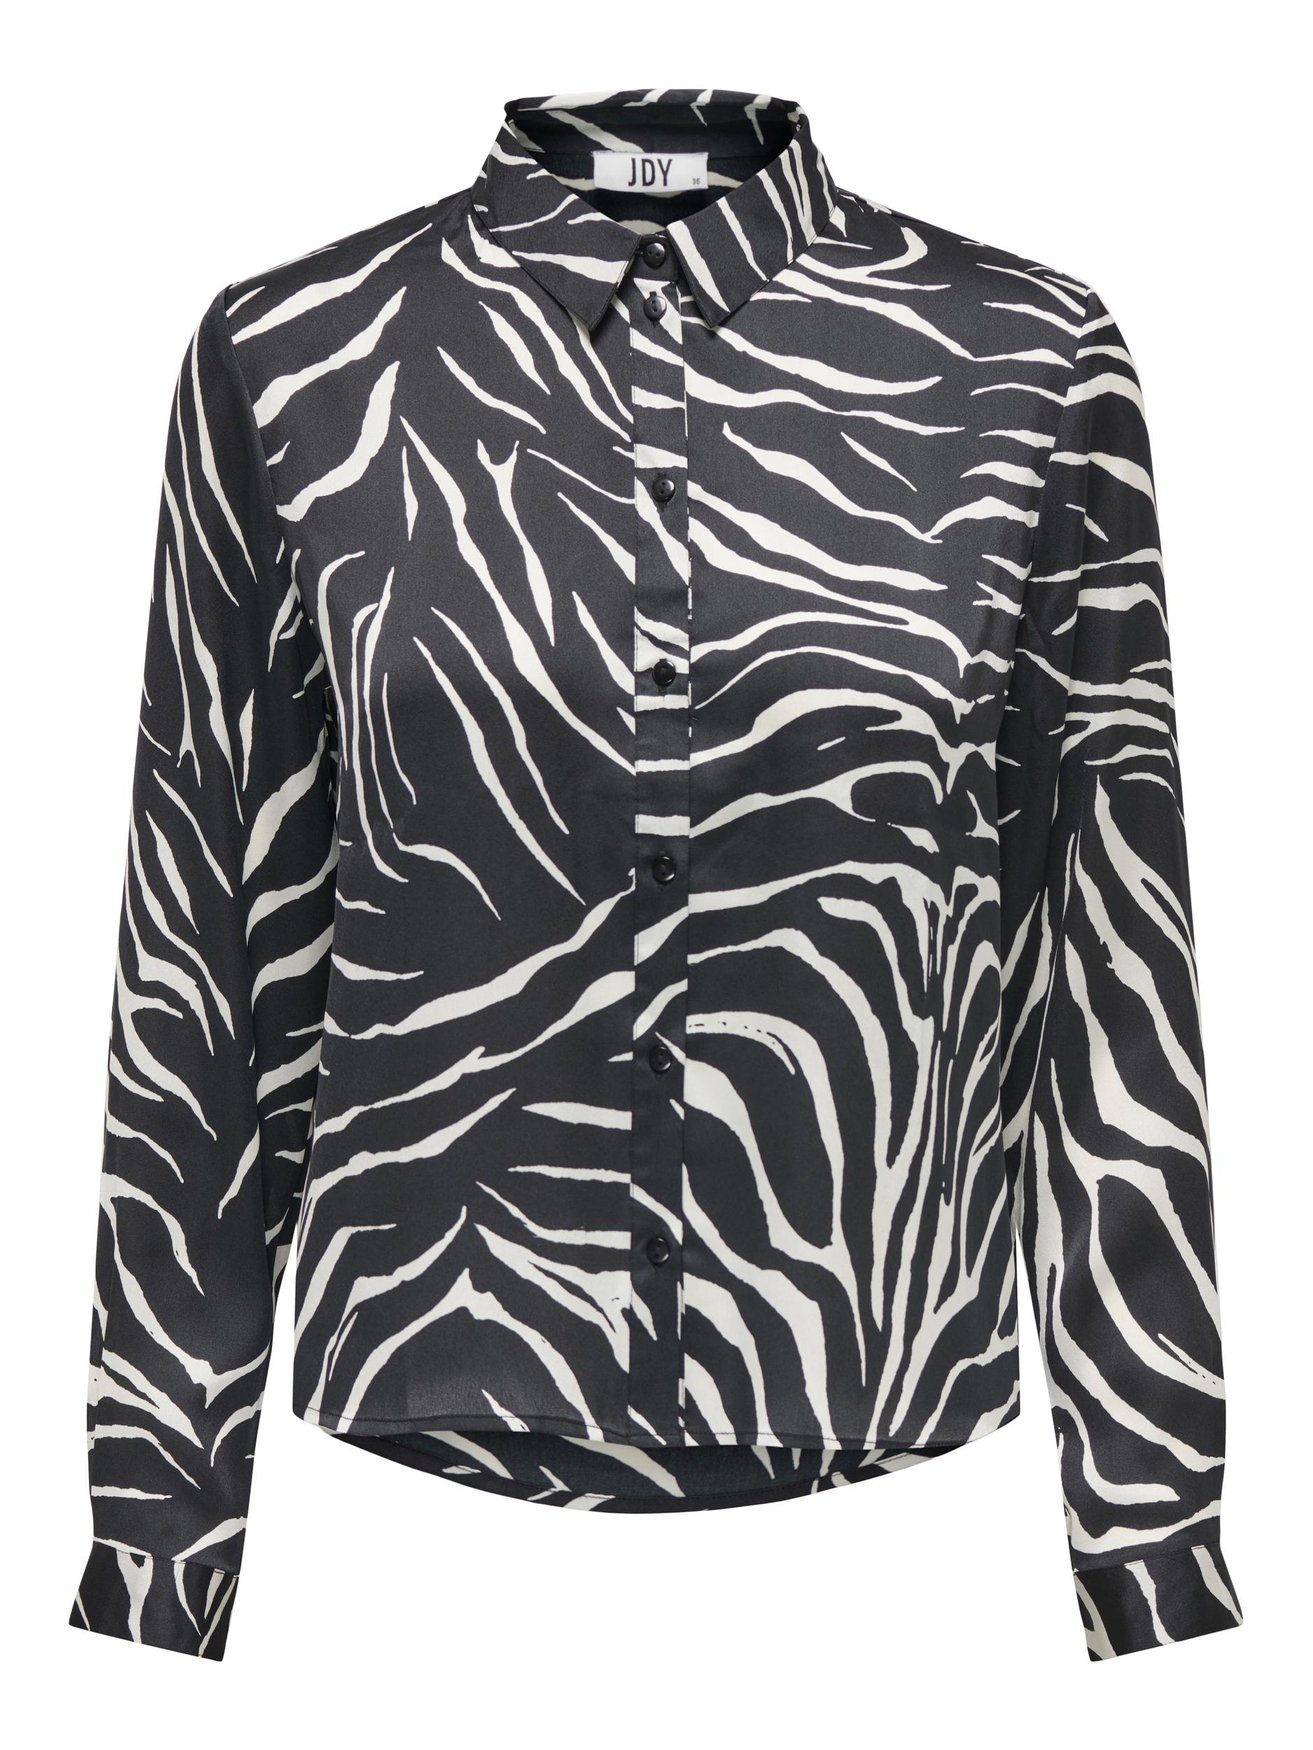 JACQUELINE de YONG Blusenshirt Elegante Satin Bluse Langarm Tunika Hemd Business JDYFIFI 4470 in Schwarz-2 | Longshirts